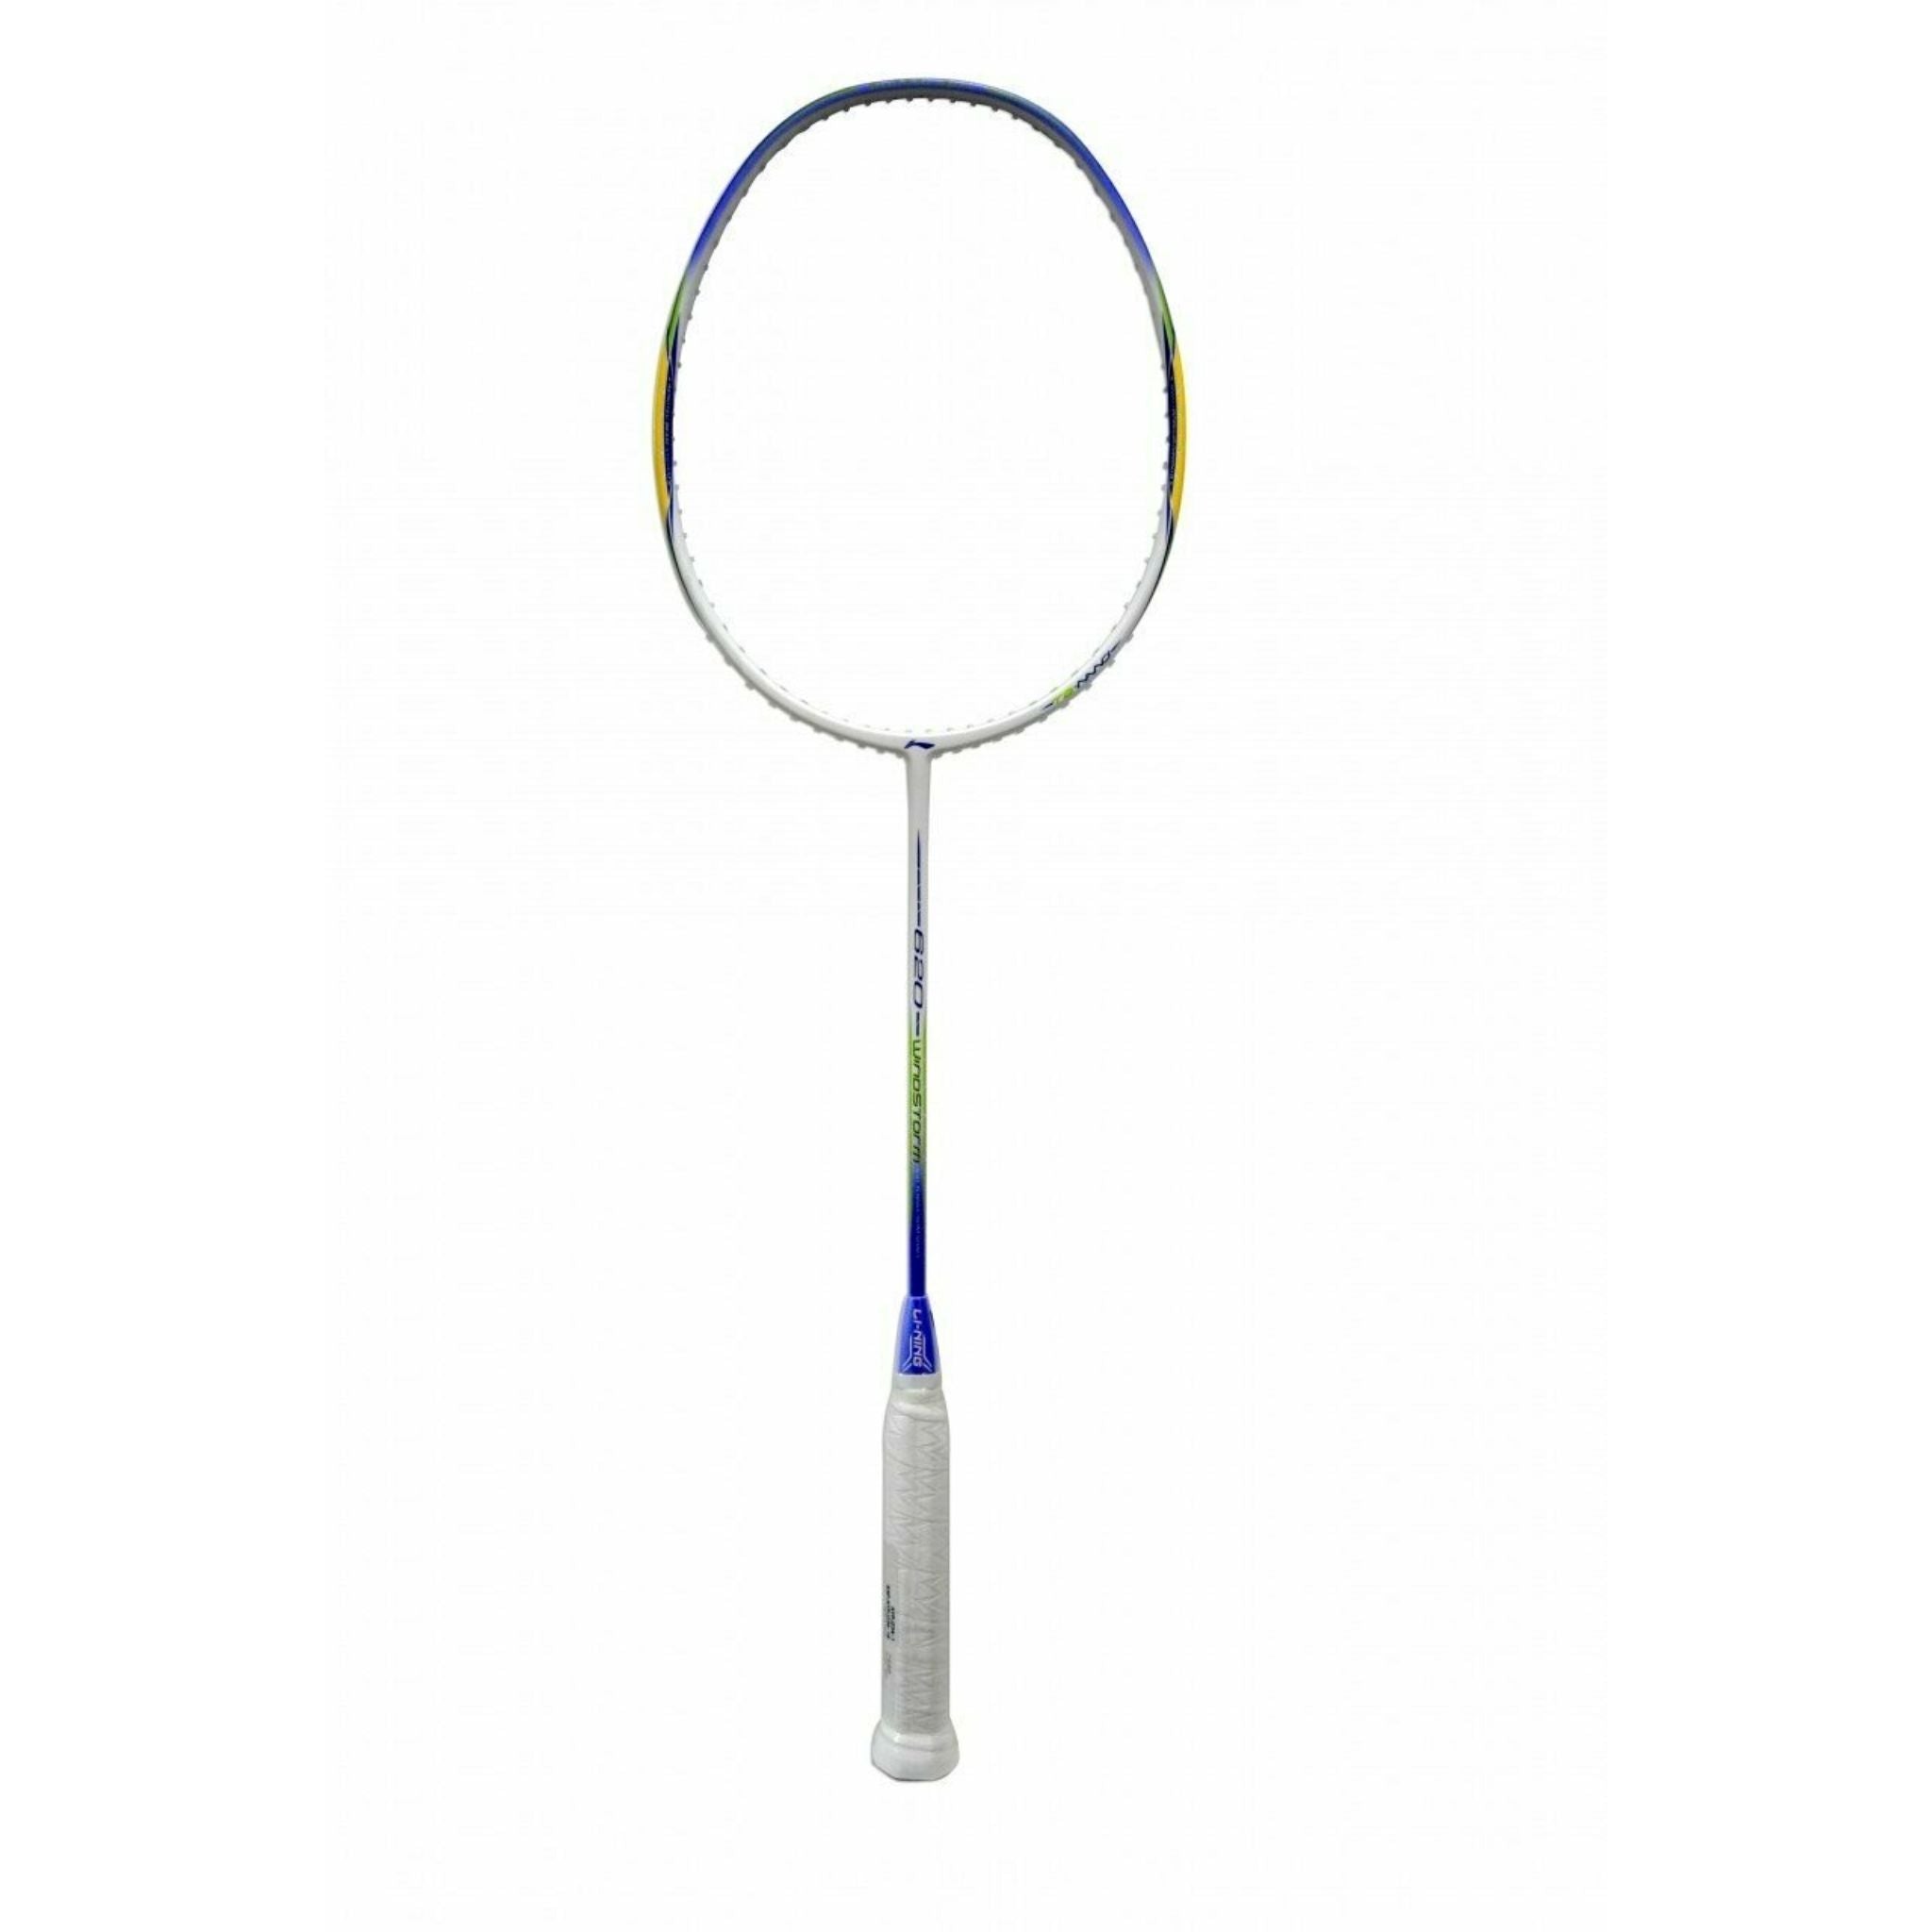 LI-NING 620 Windstorm Carbon Fiber Badminton Racquet